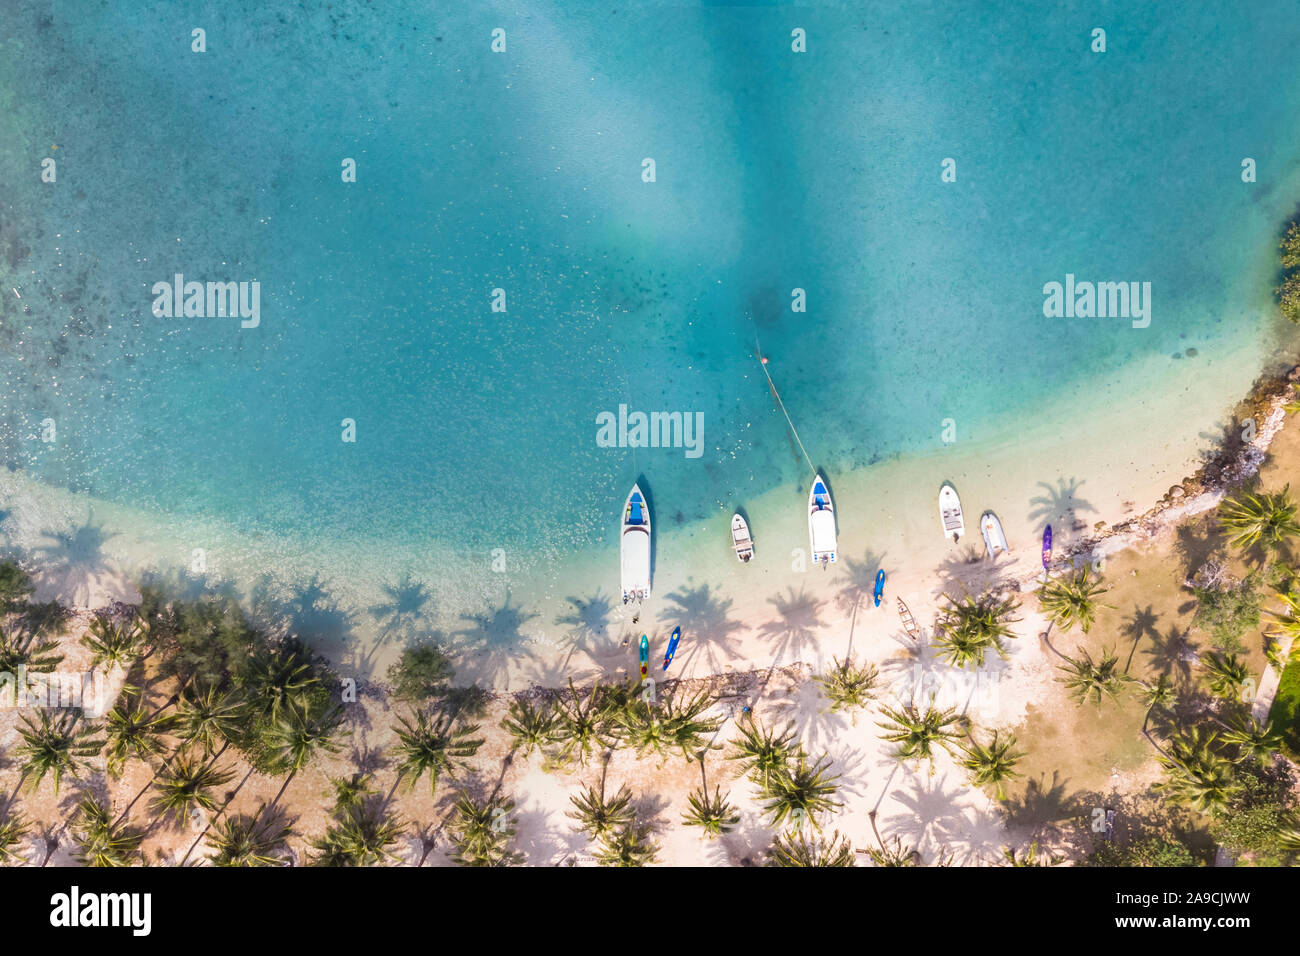 Tropical Beach photographie aérienne avec des cocotiers le long de la côte et mer transparente bleu avec de l'eau, les récifs coralliens paradise locations de vacances d Banque D'Images